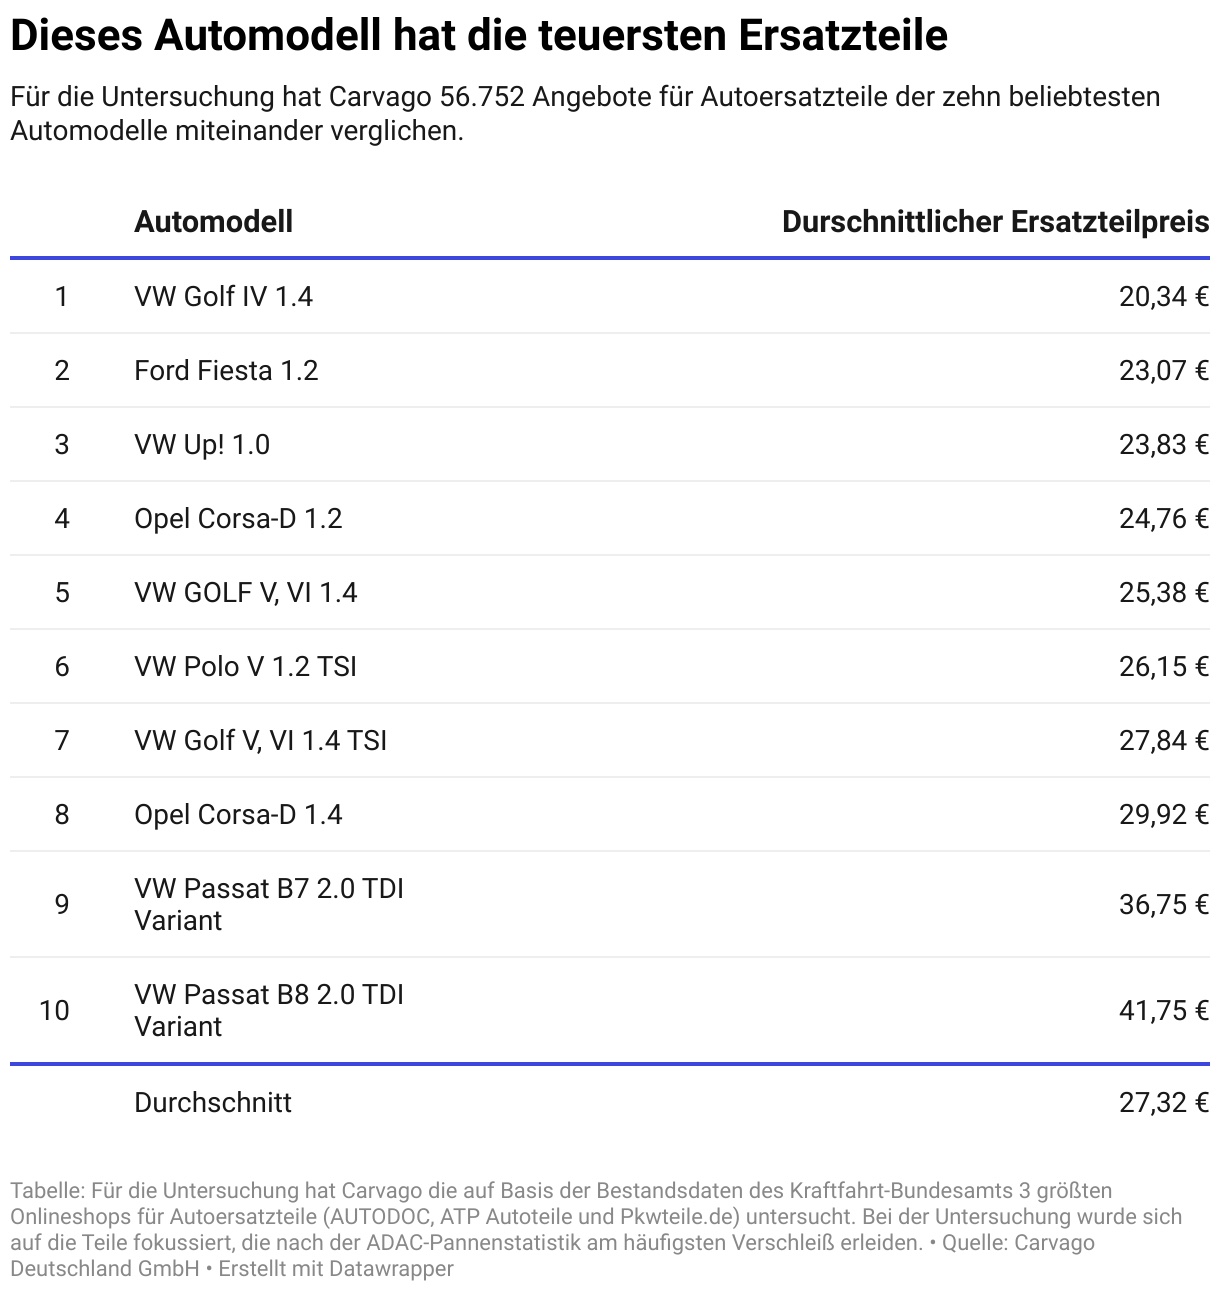 Rangliste: Das kosten Ersatzteile für die zehn gefragtesten Pkw-Modelle -   Hamburg